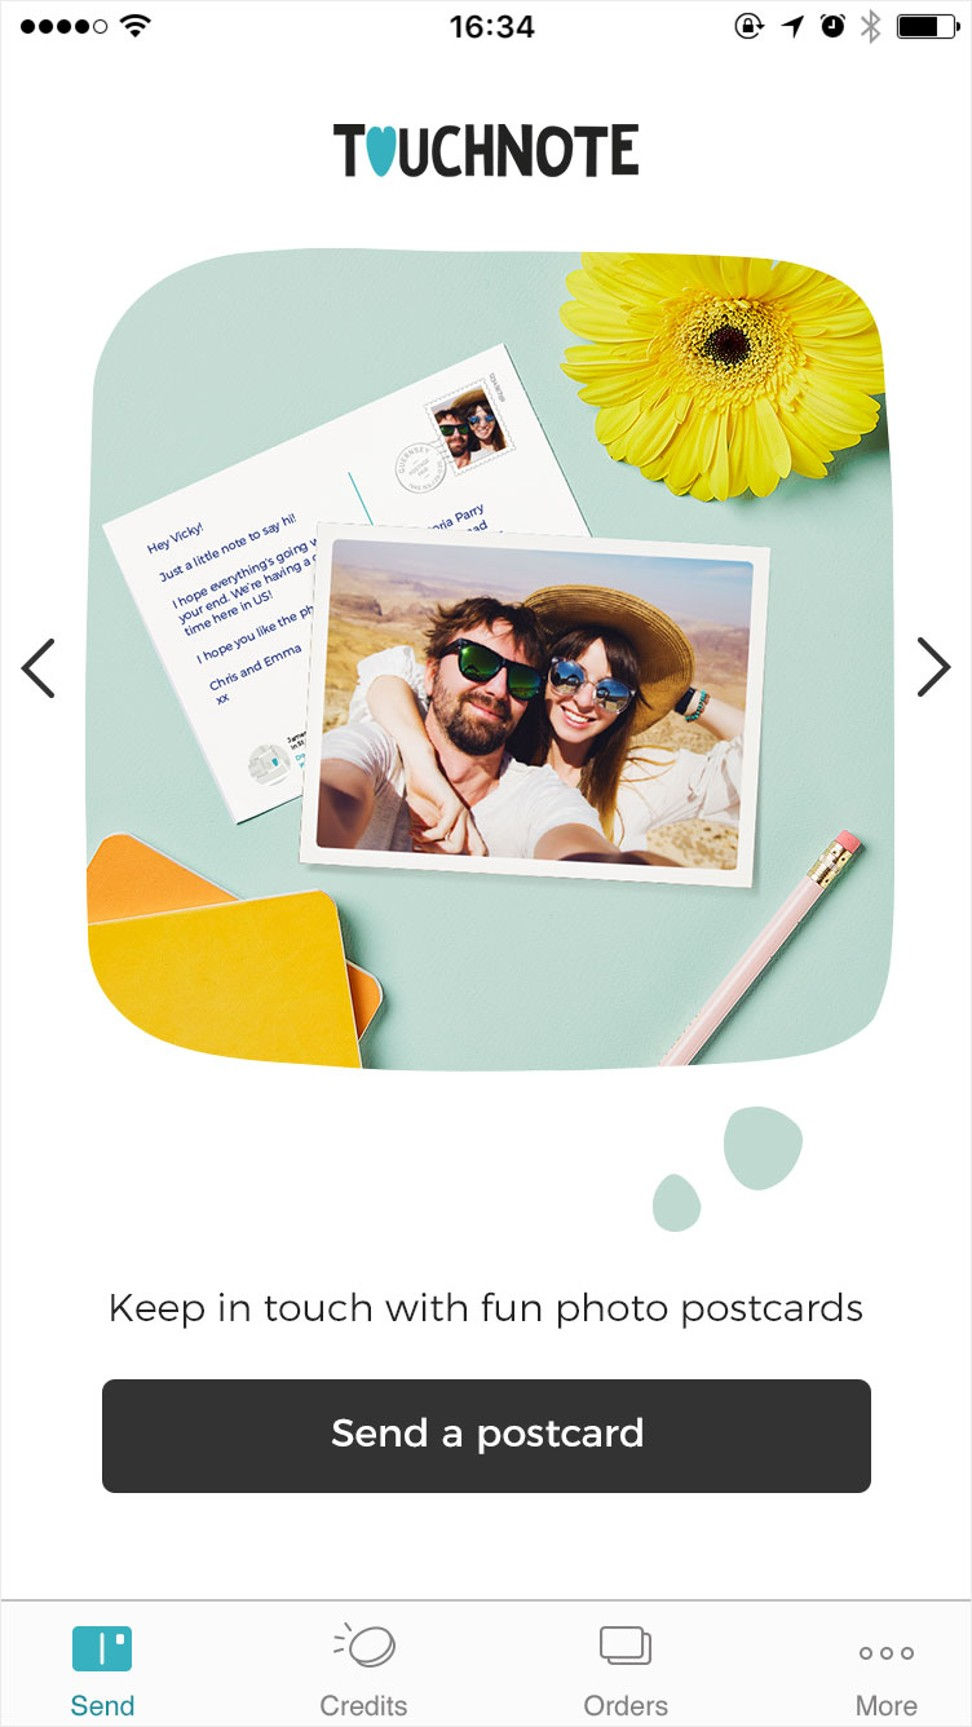   TouchNote cho phép những người yêu thích gửi bưu thiếp cho nhau.   